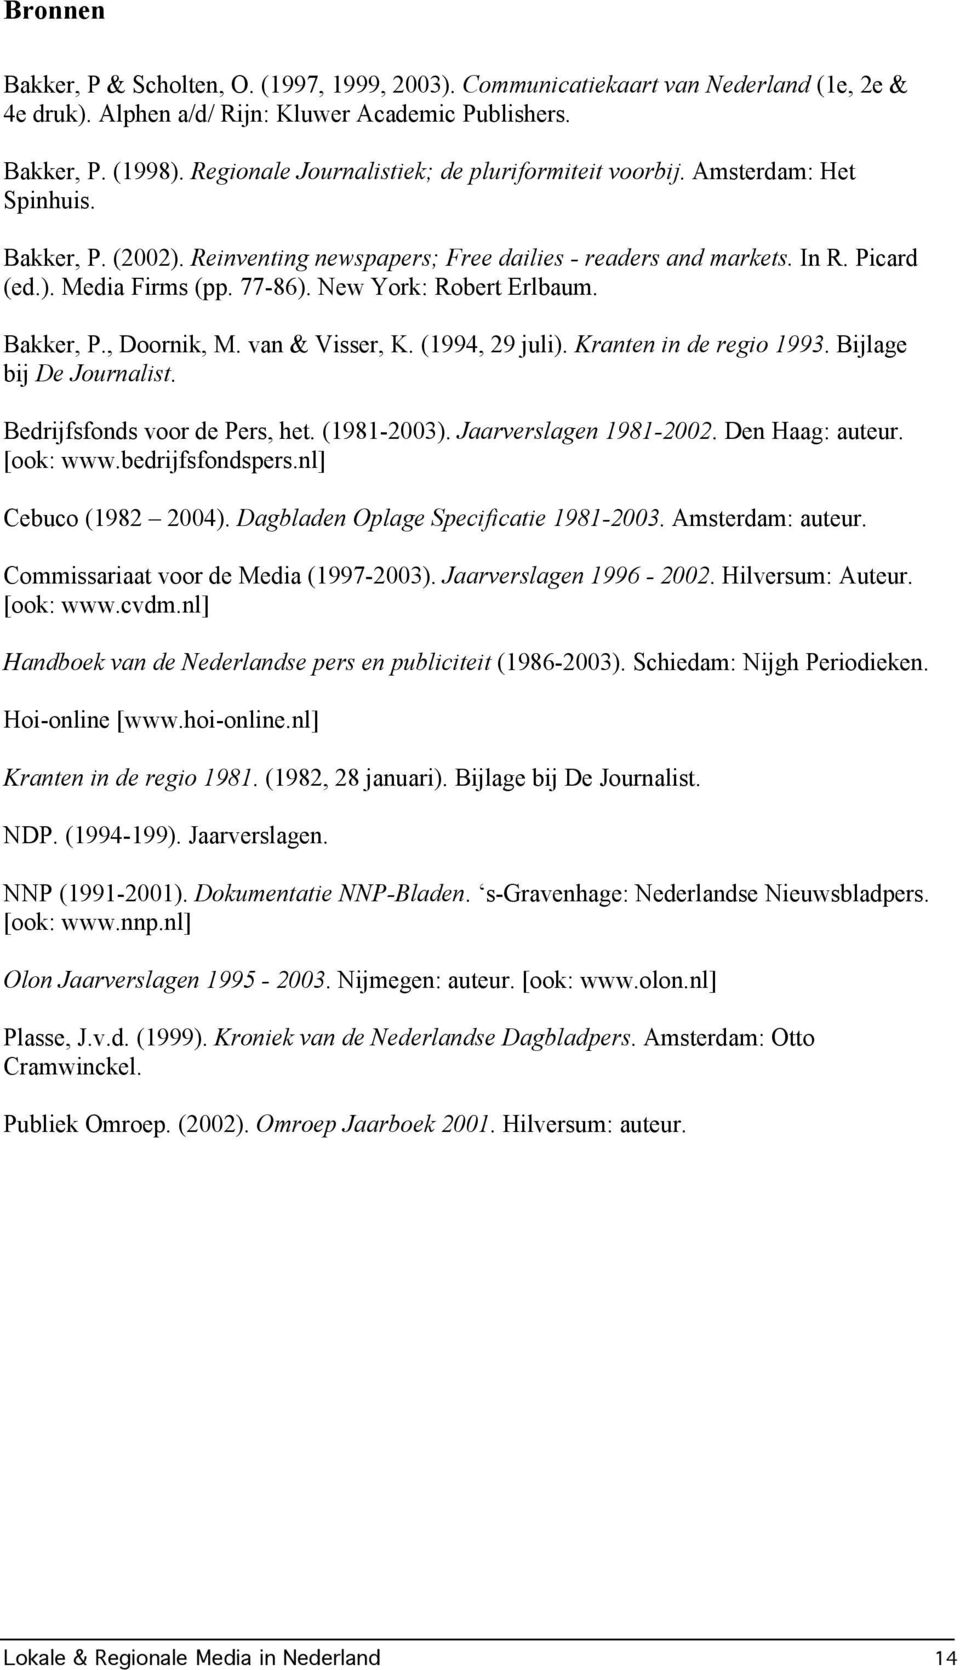 New York: Robert Erlbaum. Bakker, P., Doornik, M. van & Visser, K. (1994, 29 juli). Kranten in de regio 1993. Bijlage bij De Journalist. Bedrijfsfonds voor de Pers, het. (1981-2003).